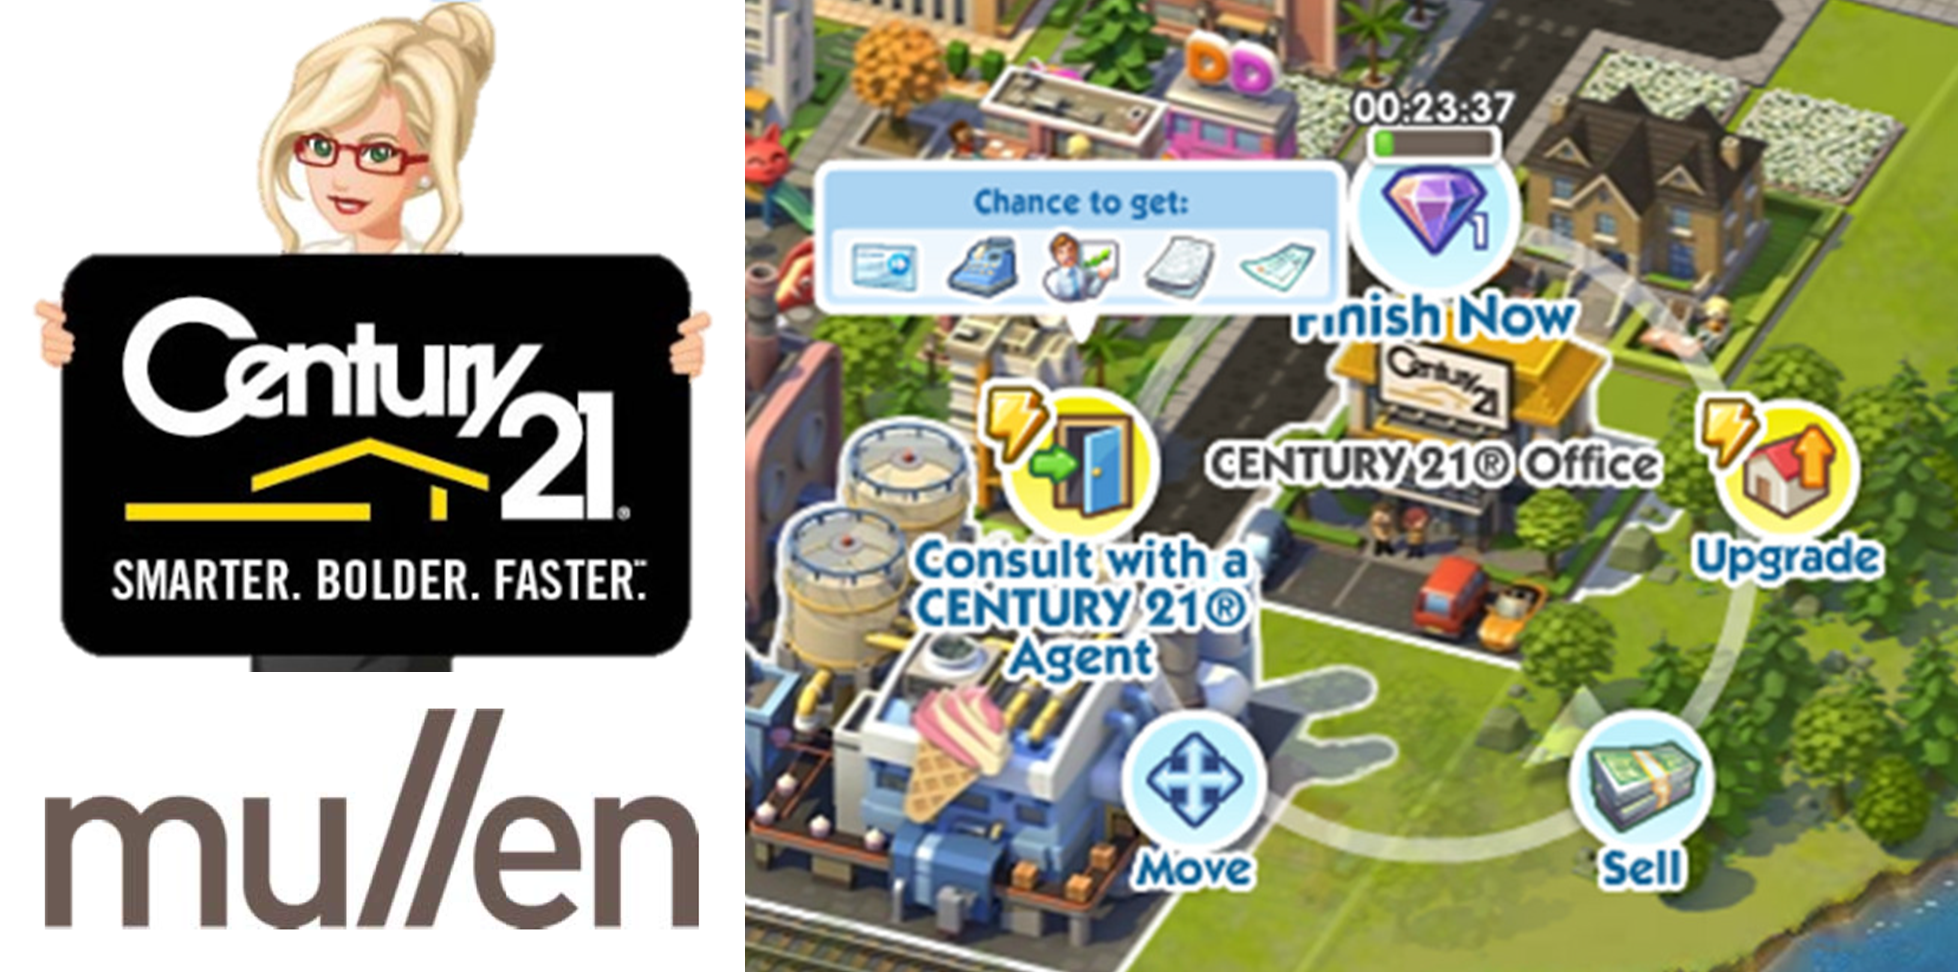 Century 21 Real Estate Moves into SimCity Social- Logo